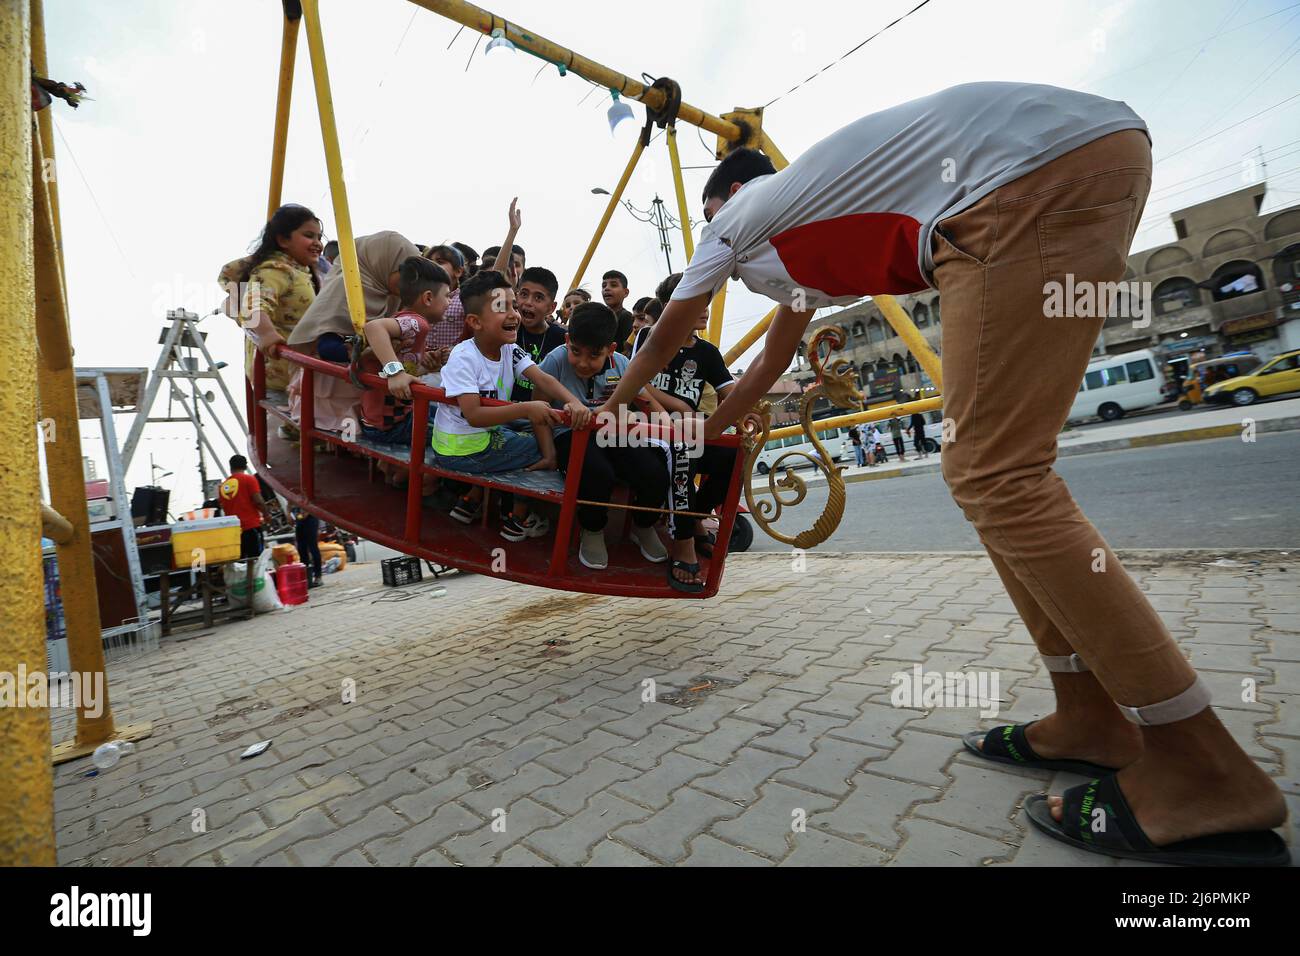 03 de mayo de 2022, Irak, Bagdad: Un hombre empuja un gran columpio con varios niños en un parque de diversiones en el distrito de la ciudad de Sadr mientras celebran el segundo día de la fiesta de Eid al-Fitr, que marca el final del mes santo musulmán de Ramadán. Foto: Ameer Al-Mohammedawi/dpa Foto de stock